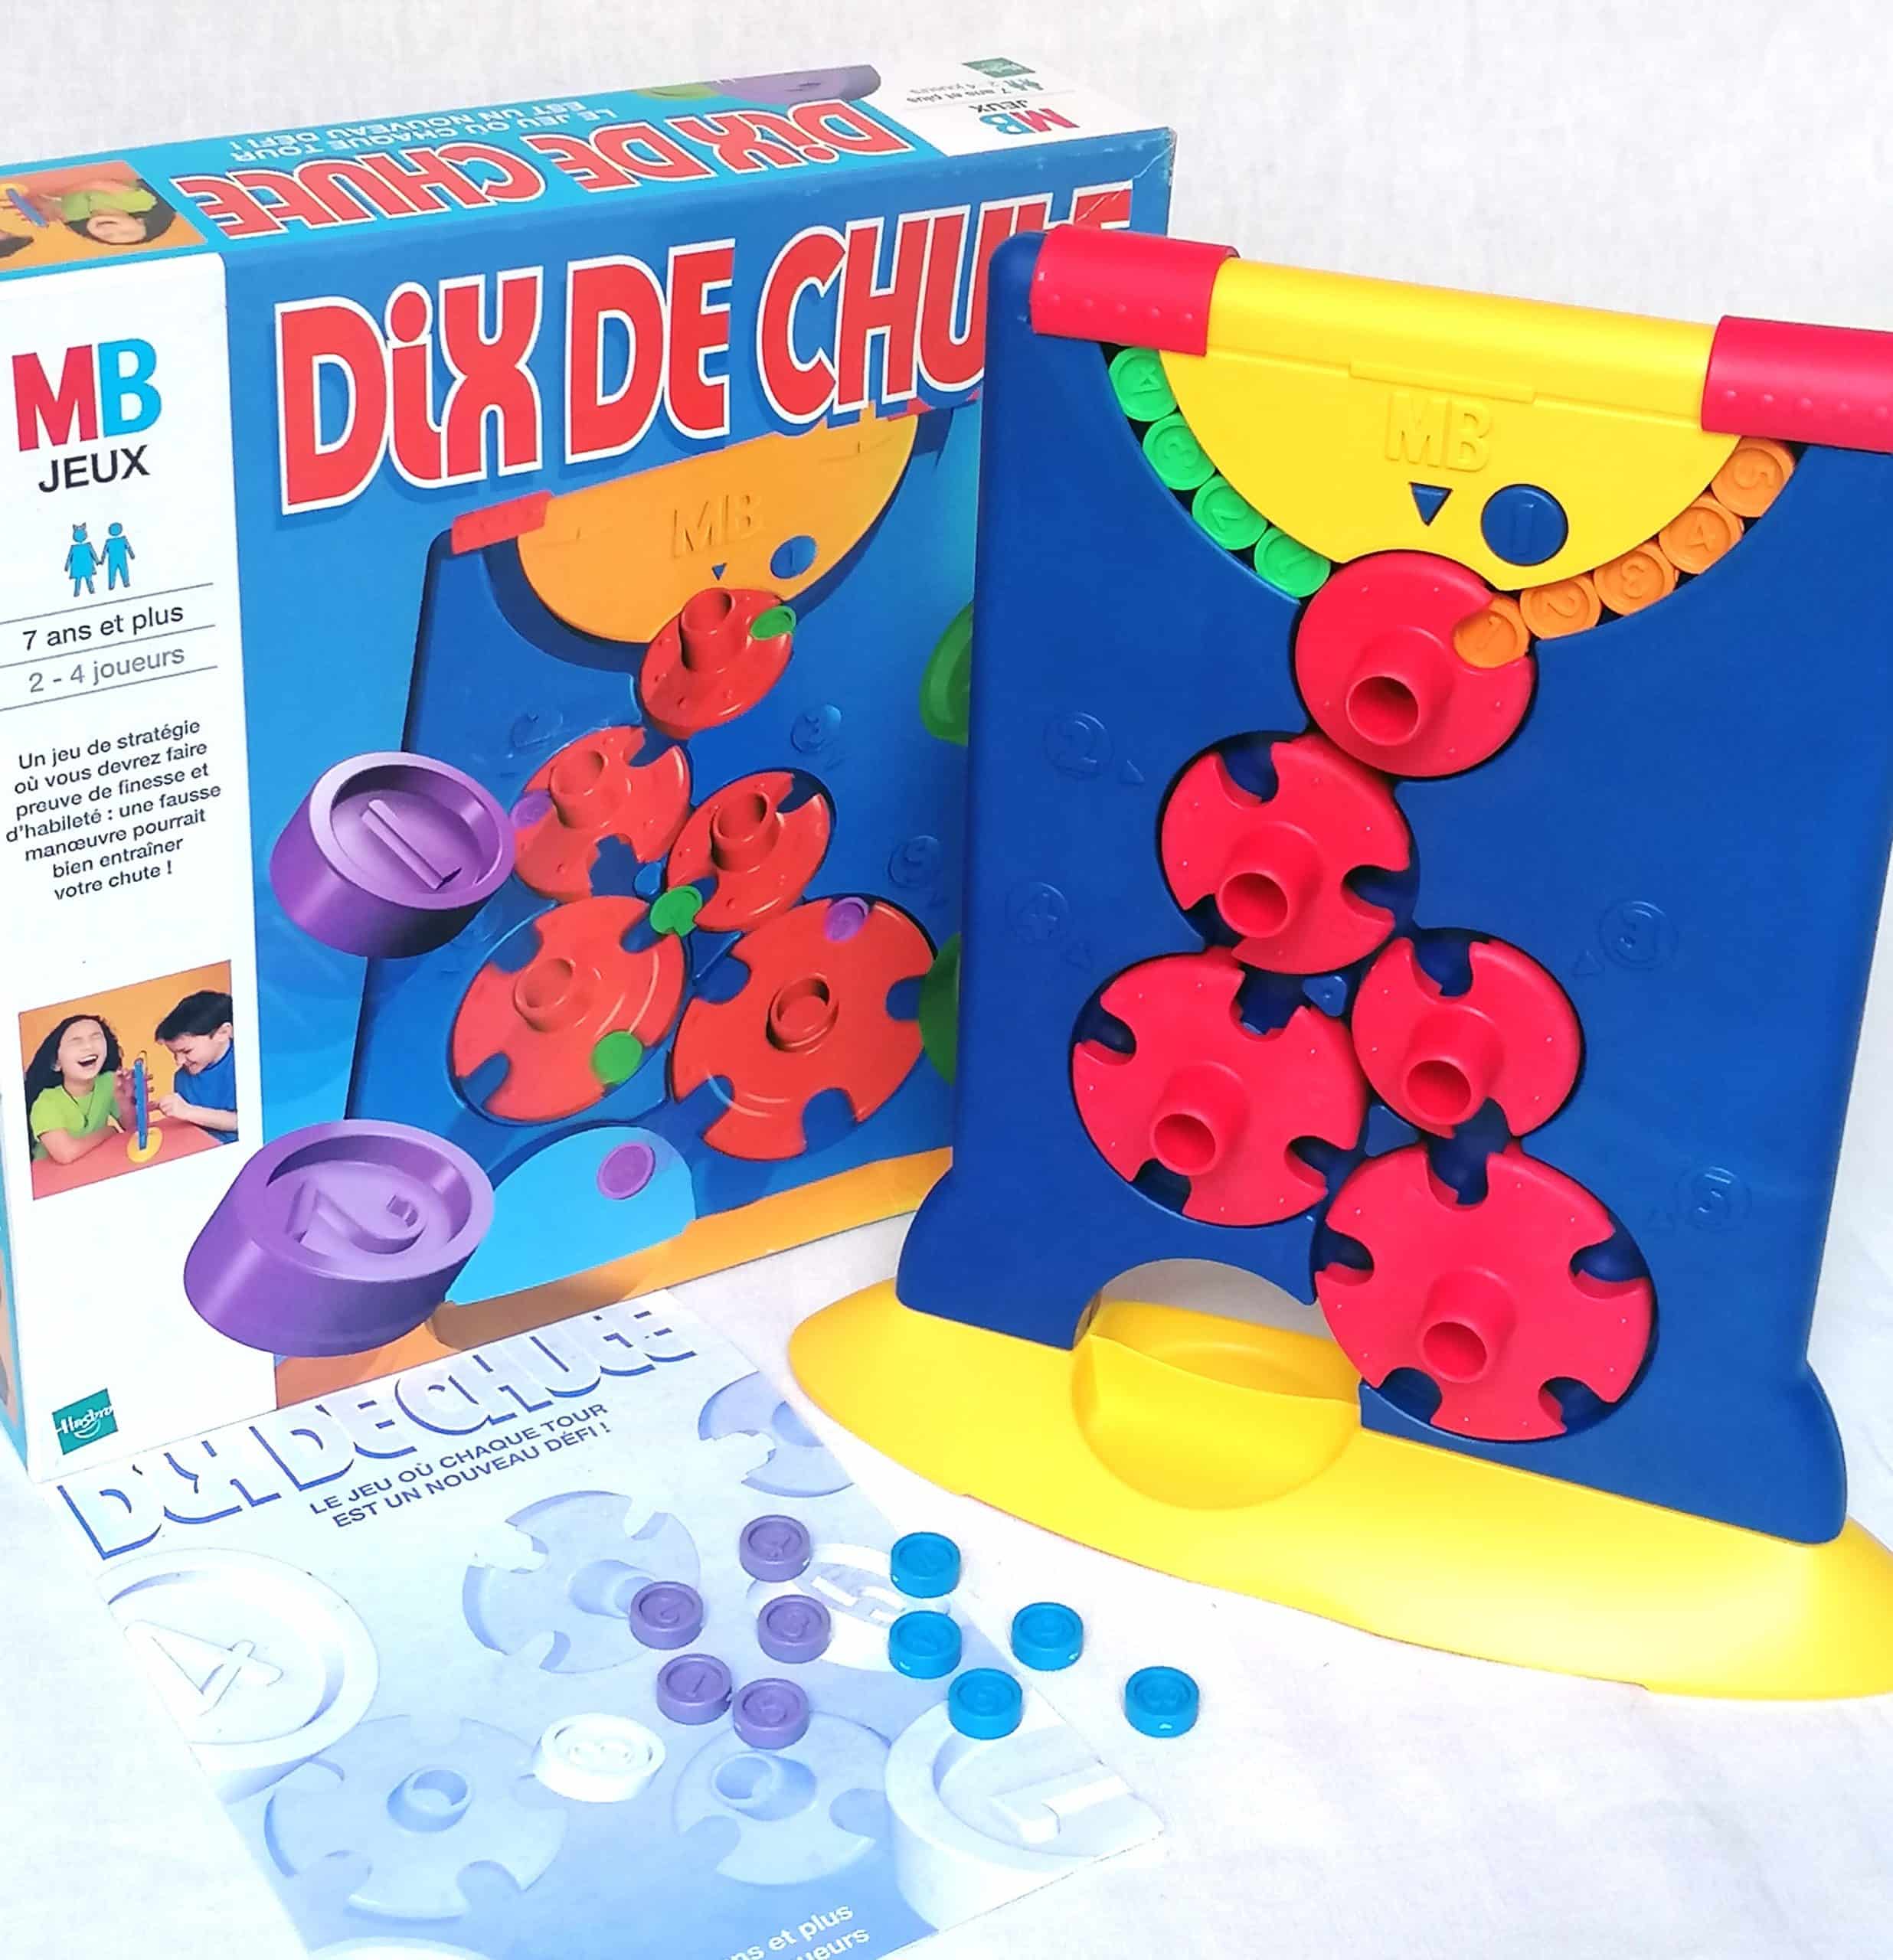 Dix de Chute - Jeu MB 1999 - jouets rétro jeux de société figurines et  objets vintage